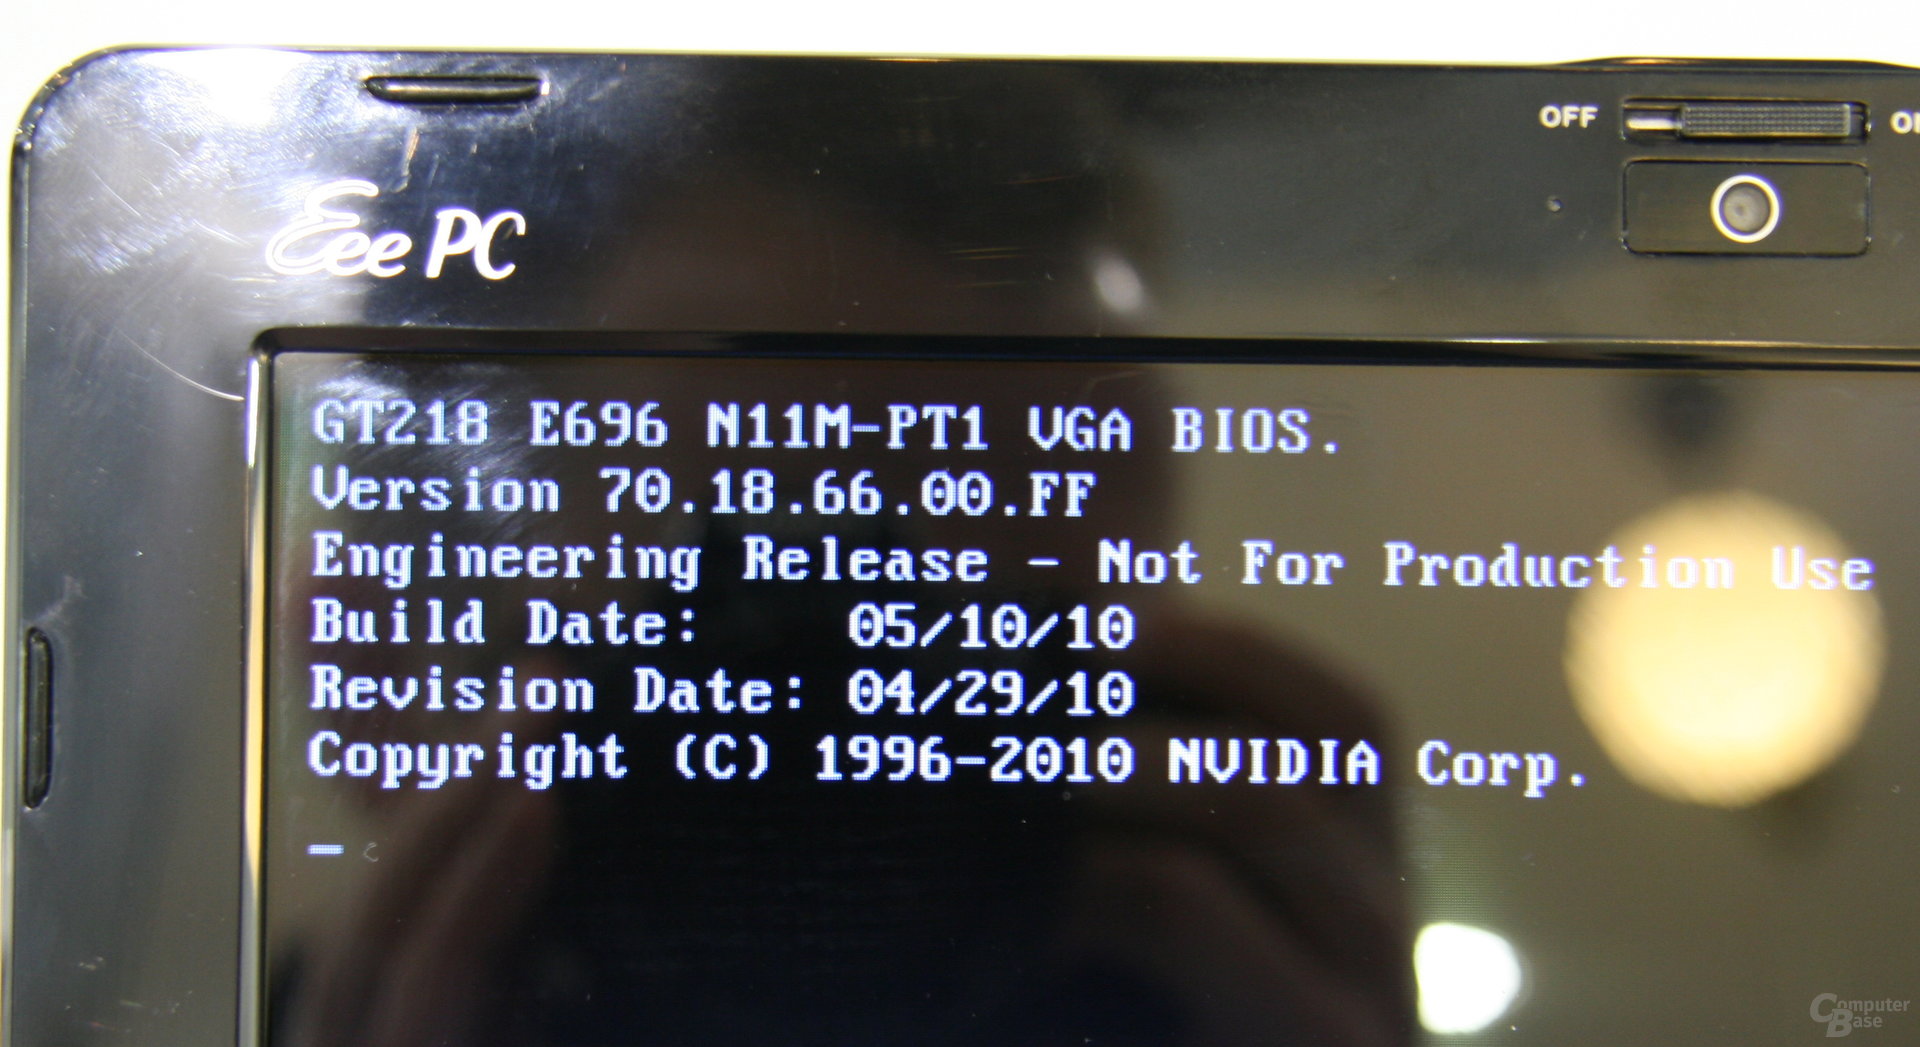 Asus Eee PC 1015T